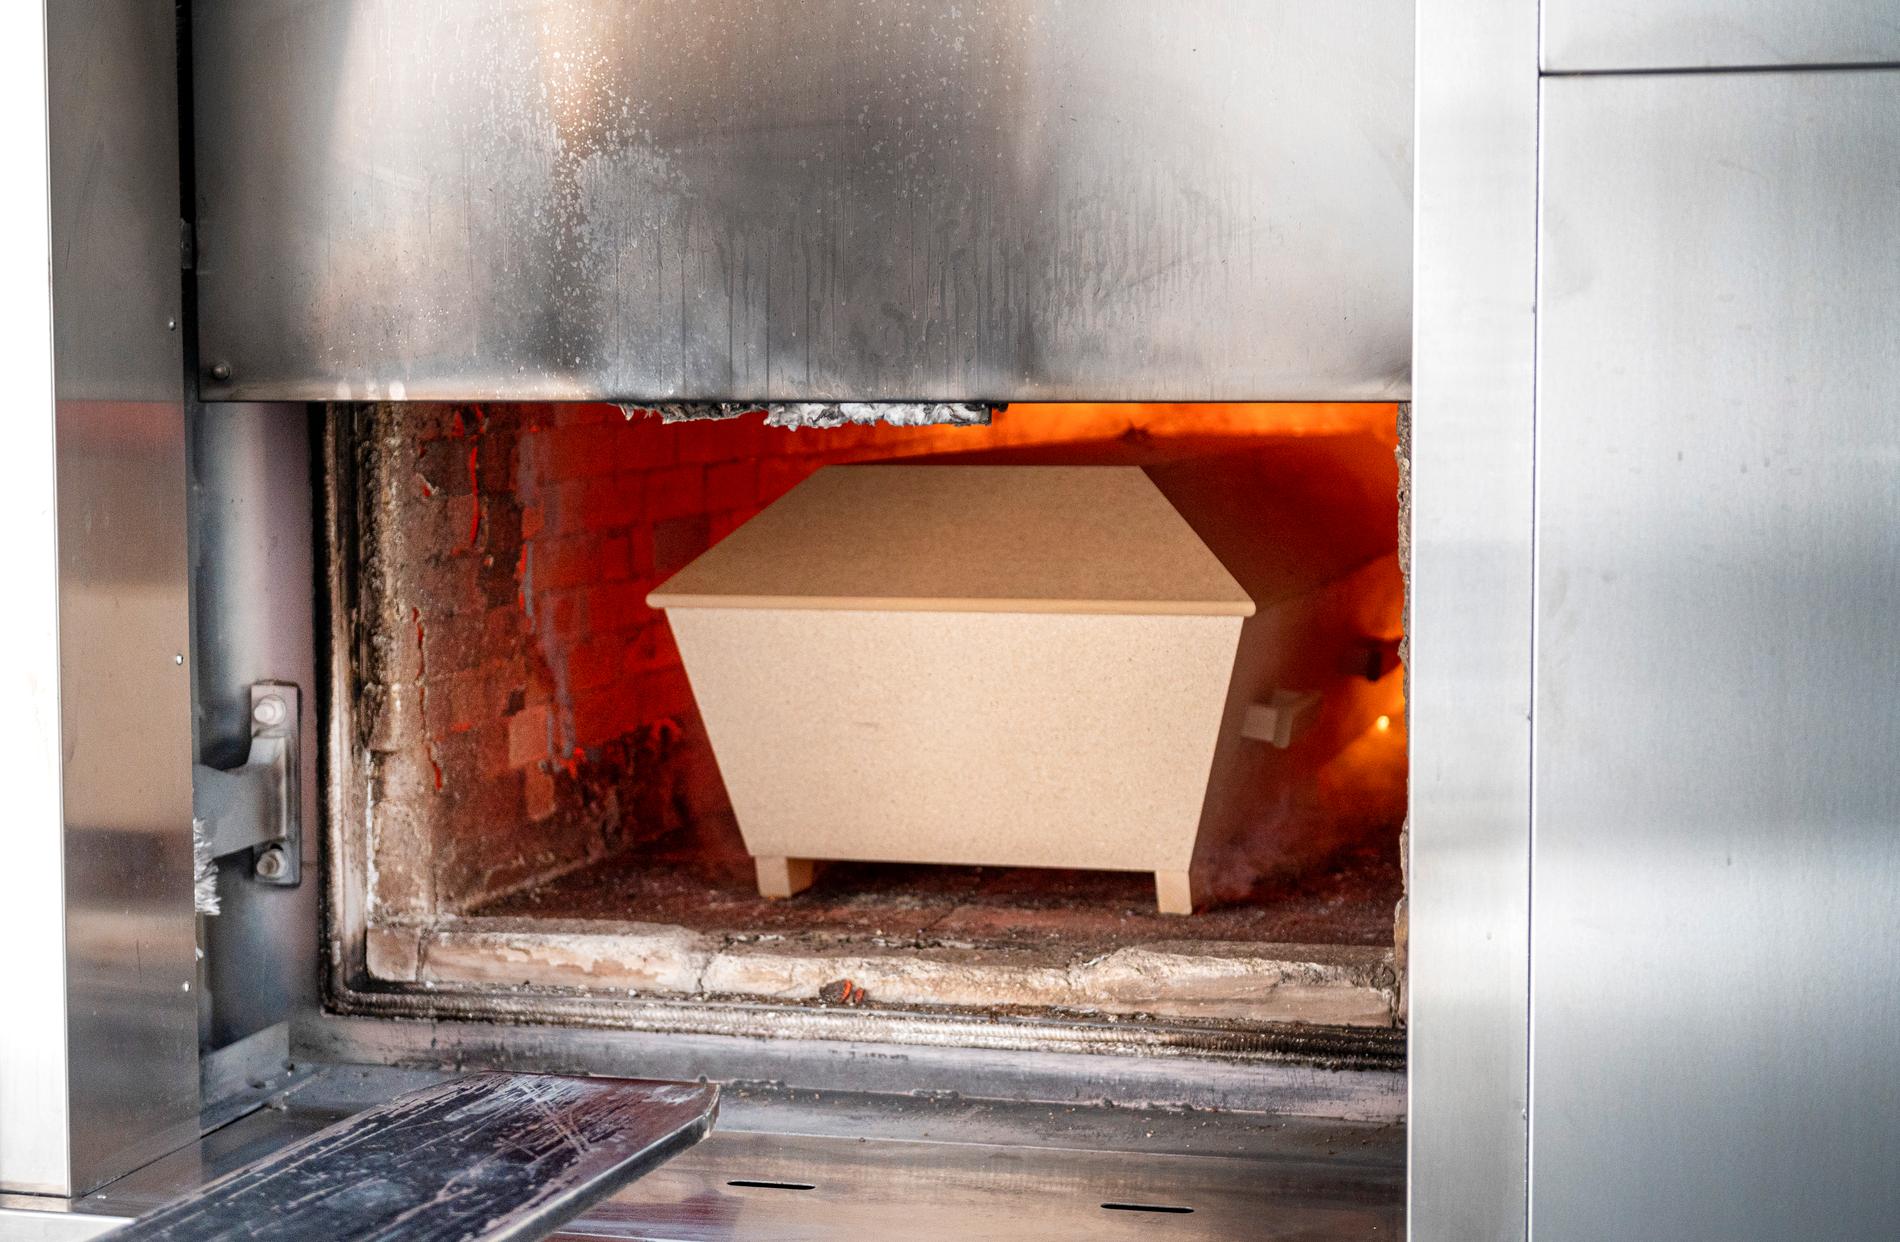 En kista förs in och bränns i ugnen, vid krematoriet på Skogskyrkogården i Stockholm.